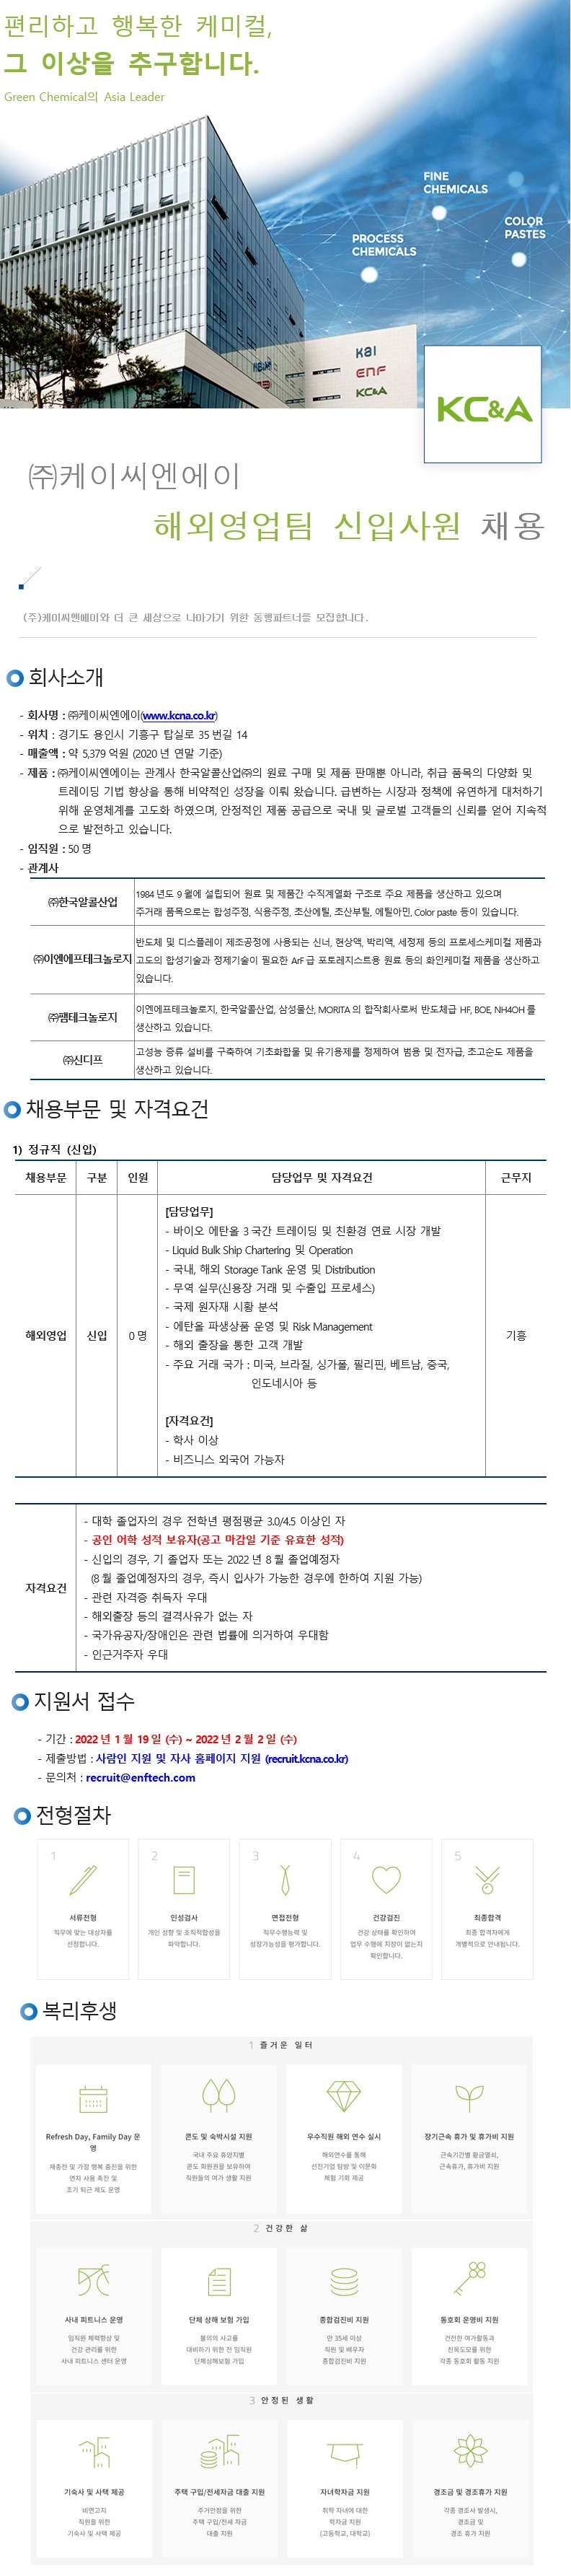 kcna 해외영업팀 신입 채용 공고문.png